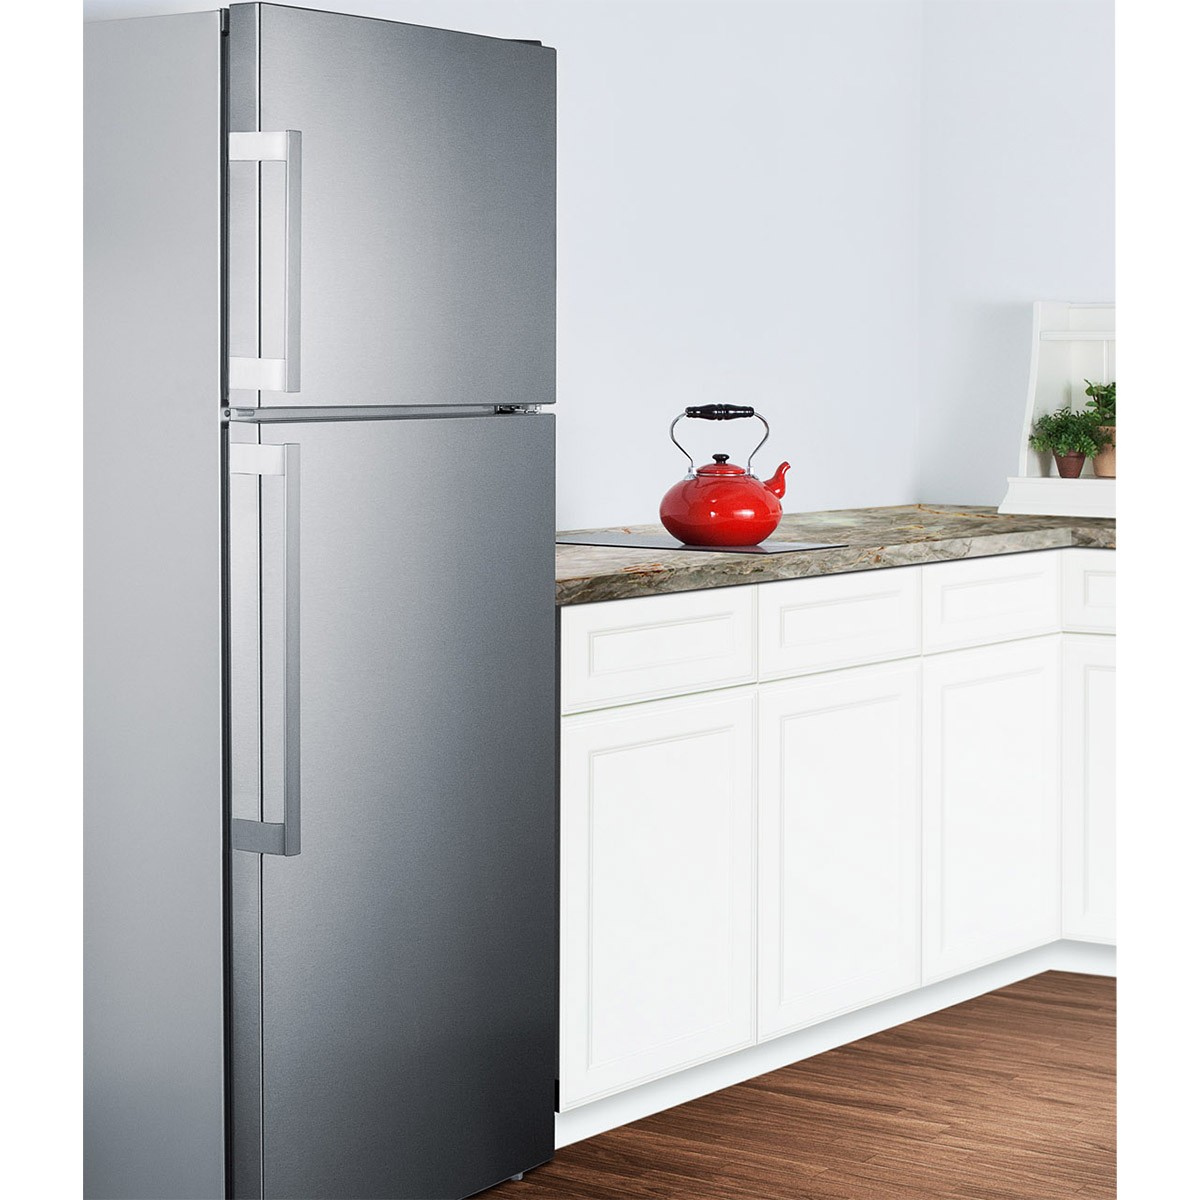 Холодильник узкий 45 купить. Неглубокий холодильник. Узкий холодильник 40 см. Холодильники узкие и неглубокие. Узкий холодильник 40 см двухкамерный.